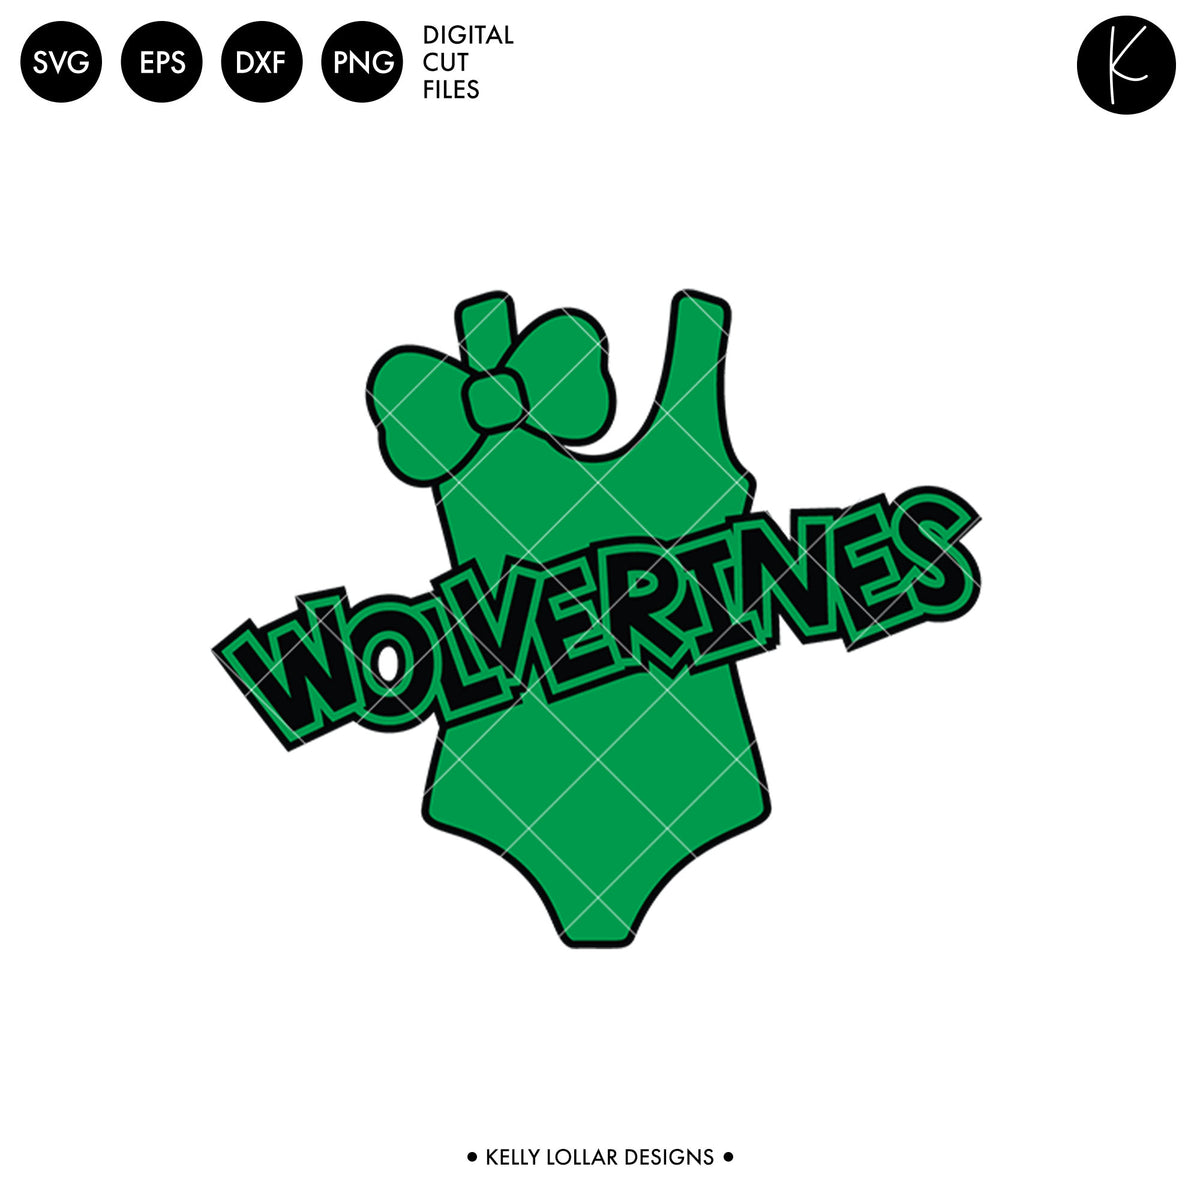 Wolverines Swim Bundle | SVG DXF EPS PNG Cut Files